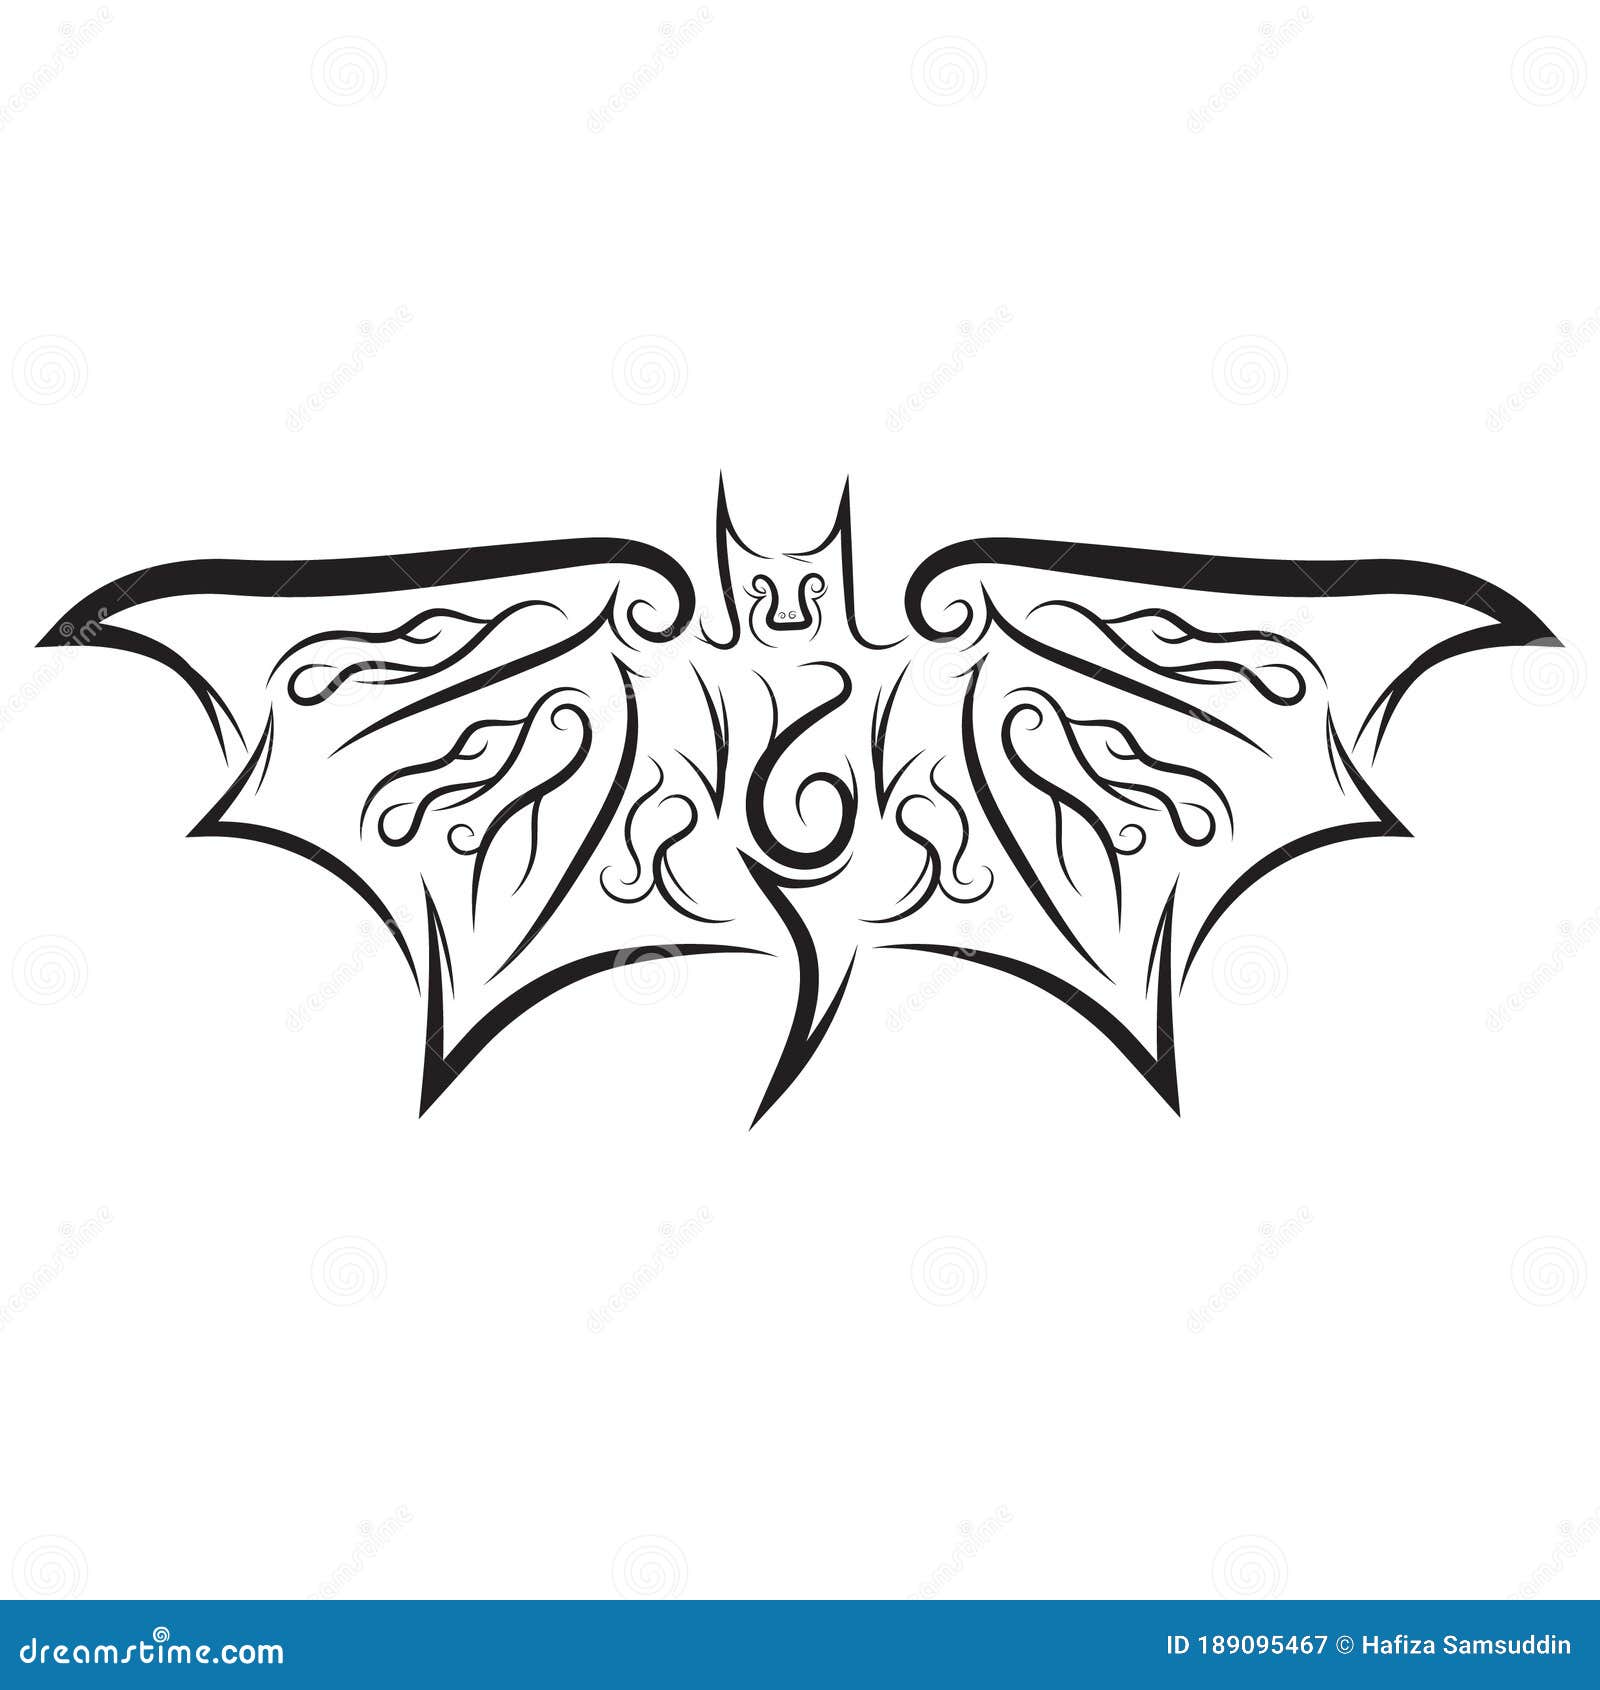 Tribal Bat Tattoo Idea  BlackInk